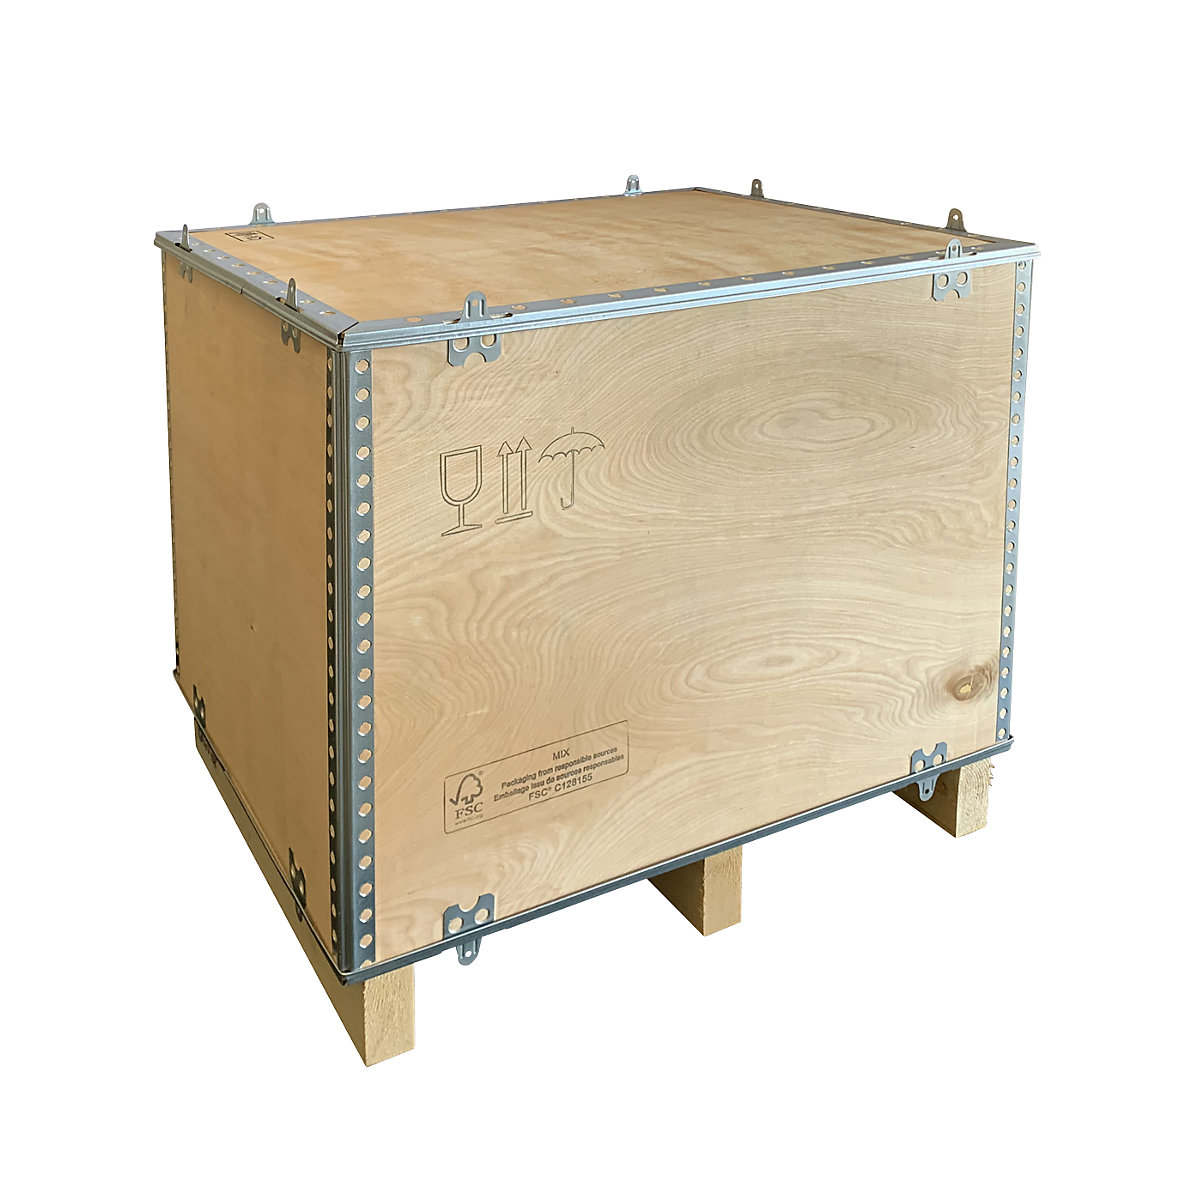 POTSDAM — Cajas de madera con separadores extraibles